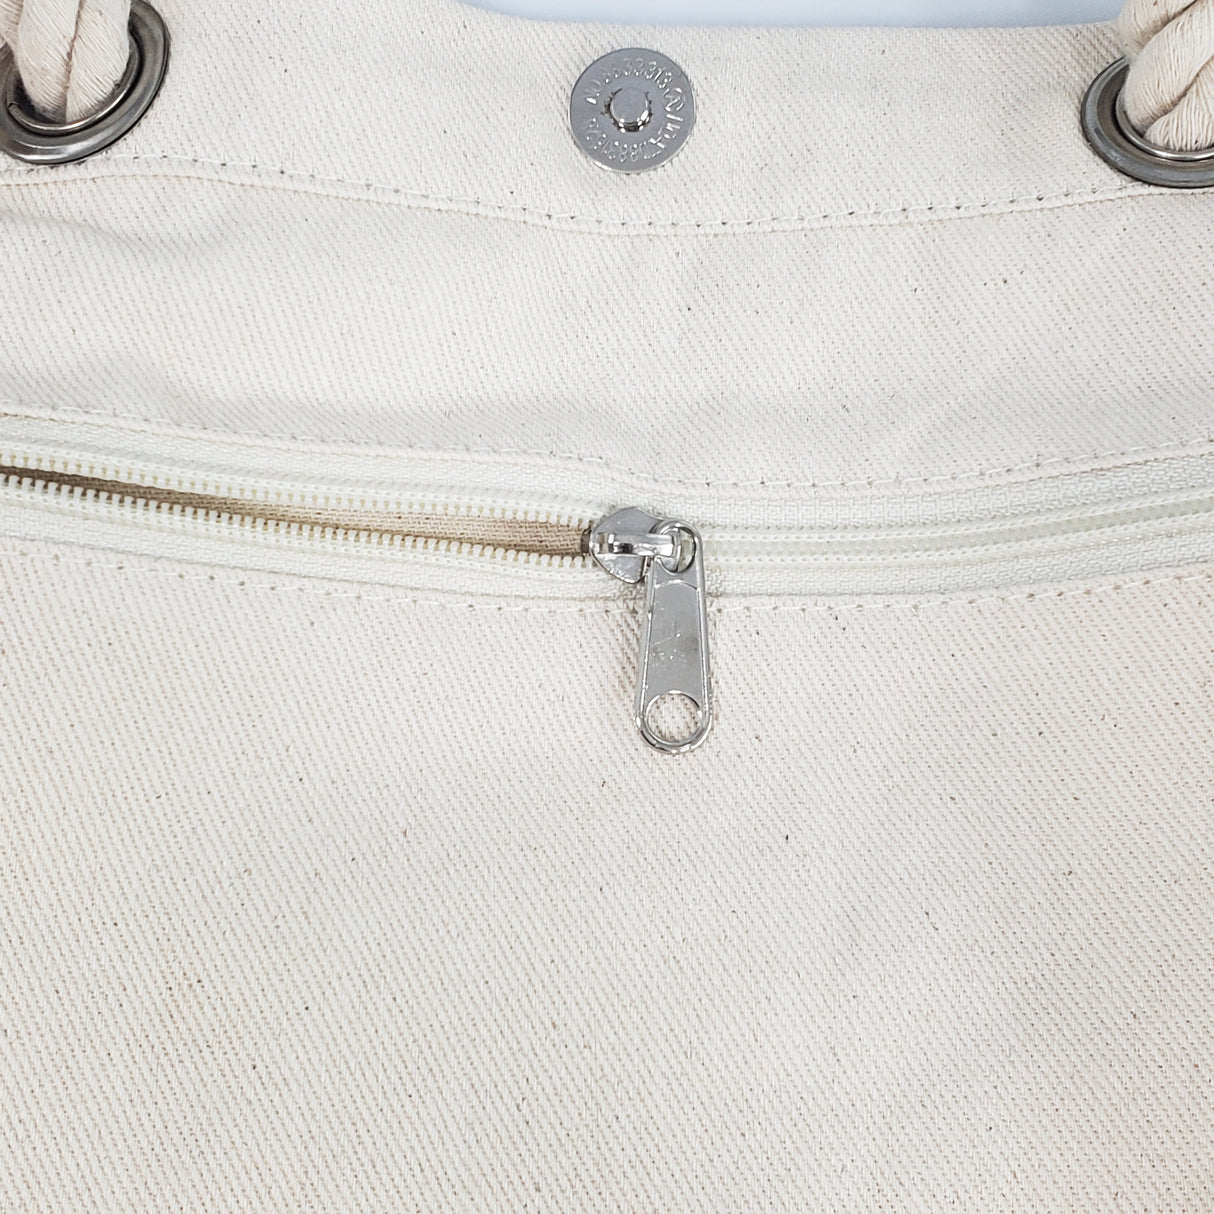 canvas-totebag-inside-pocket-zipper-detail